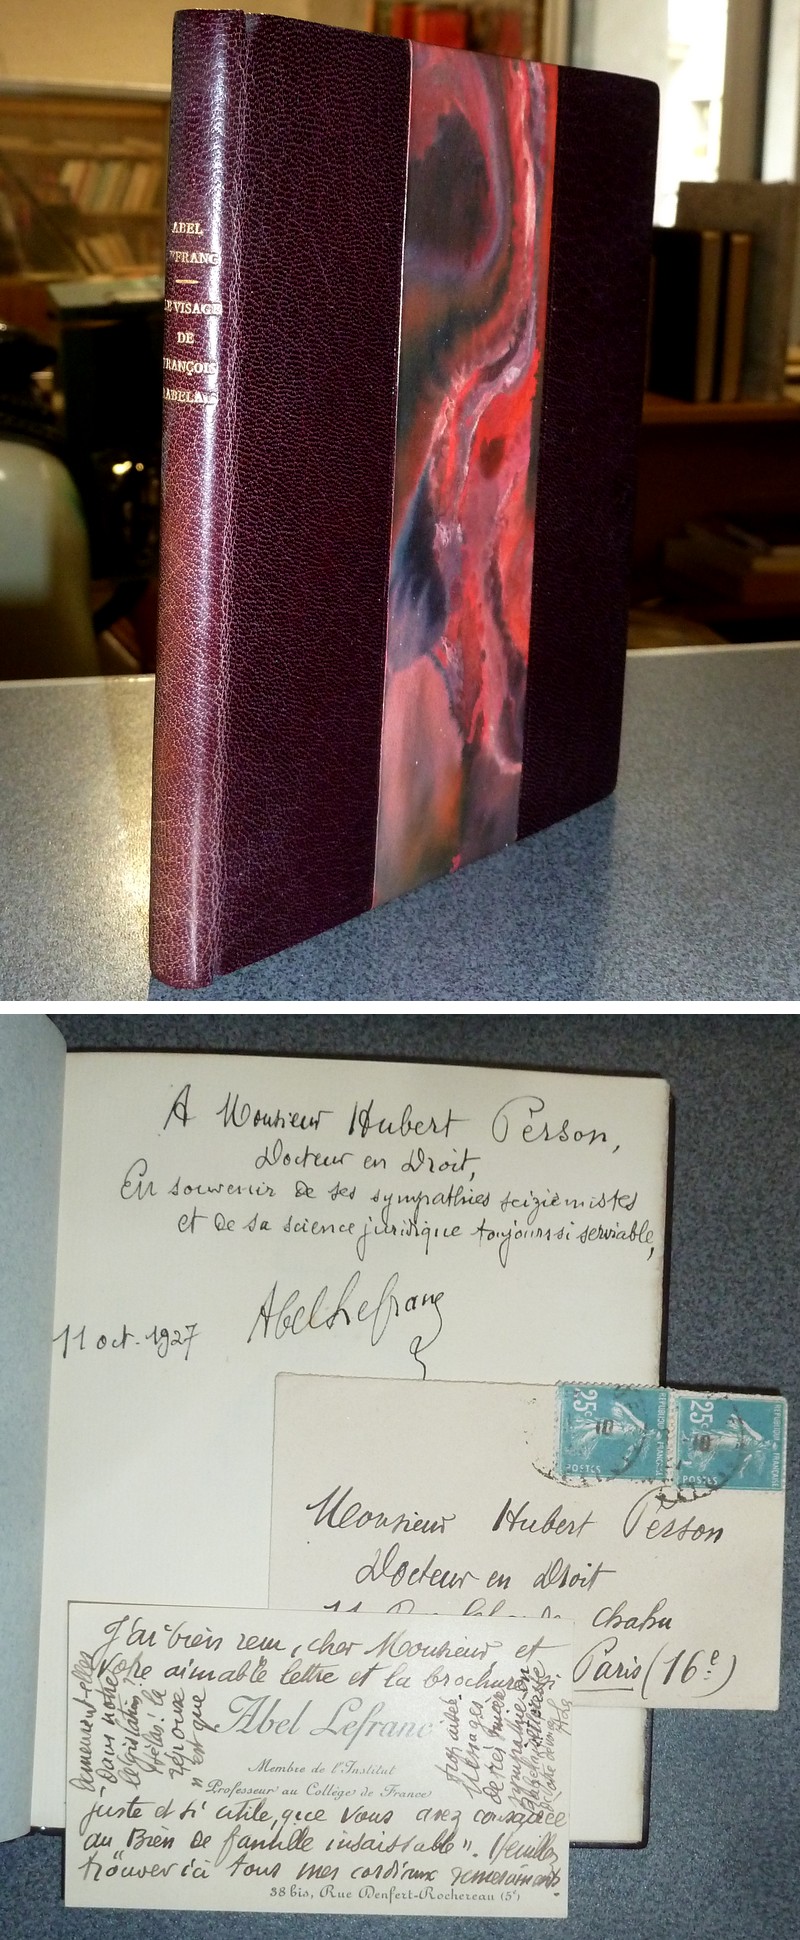 Le visage de François Rabelais (avec une lettre autographe signée de l'auteur et une reliure en maroquin signée)